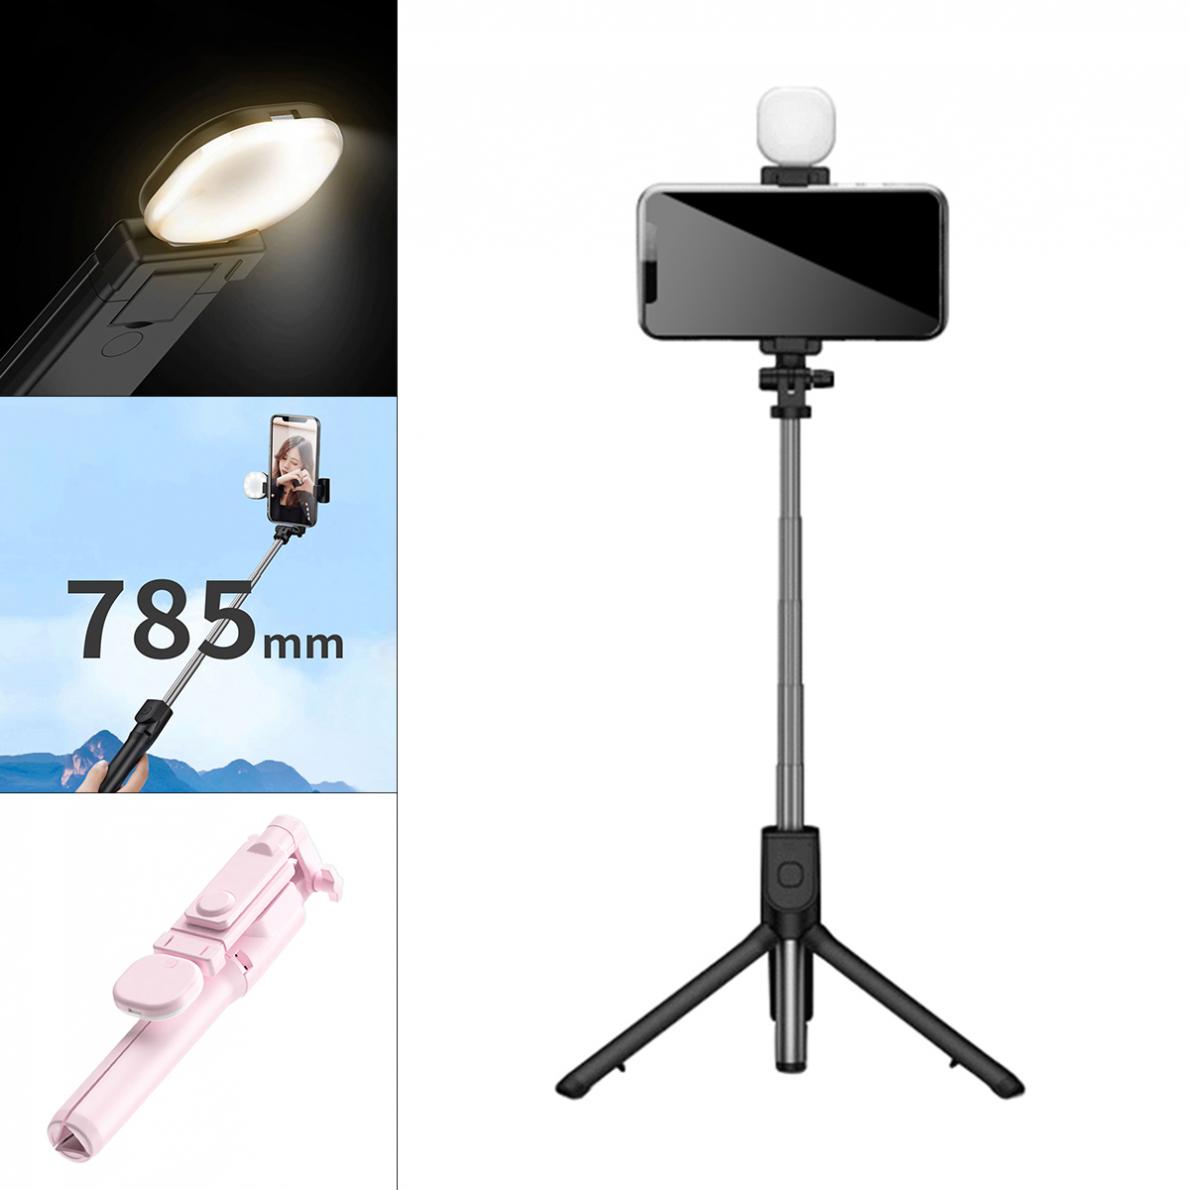 H831 Vullen Licht Live Selfie Stick Multifunctionele Live Statief Afstandsbediening Voor Smart Telefoon Voor Live / Video